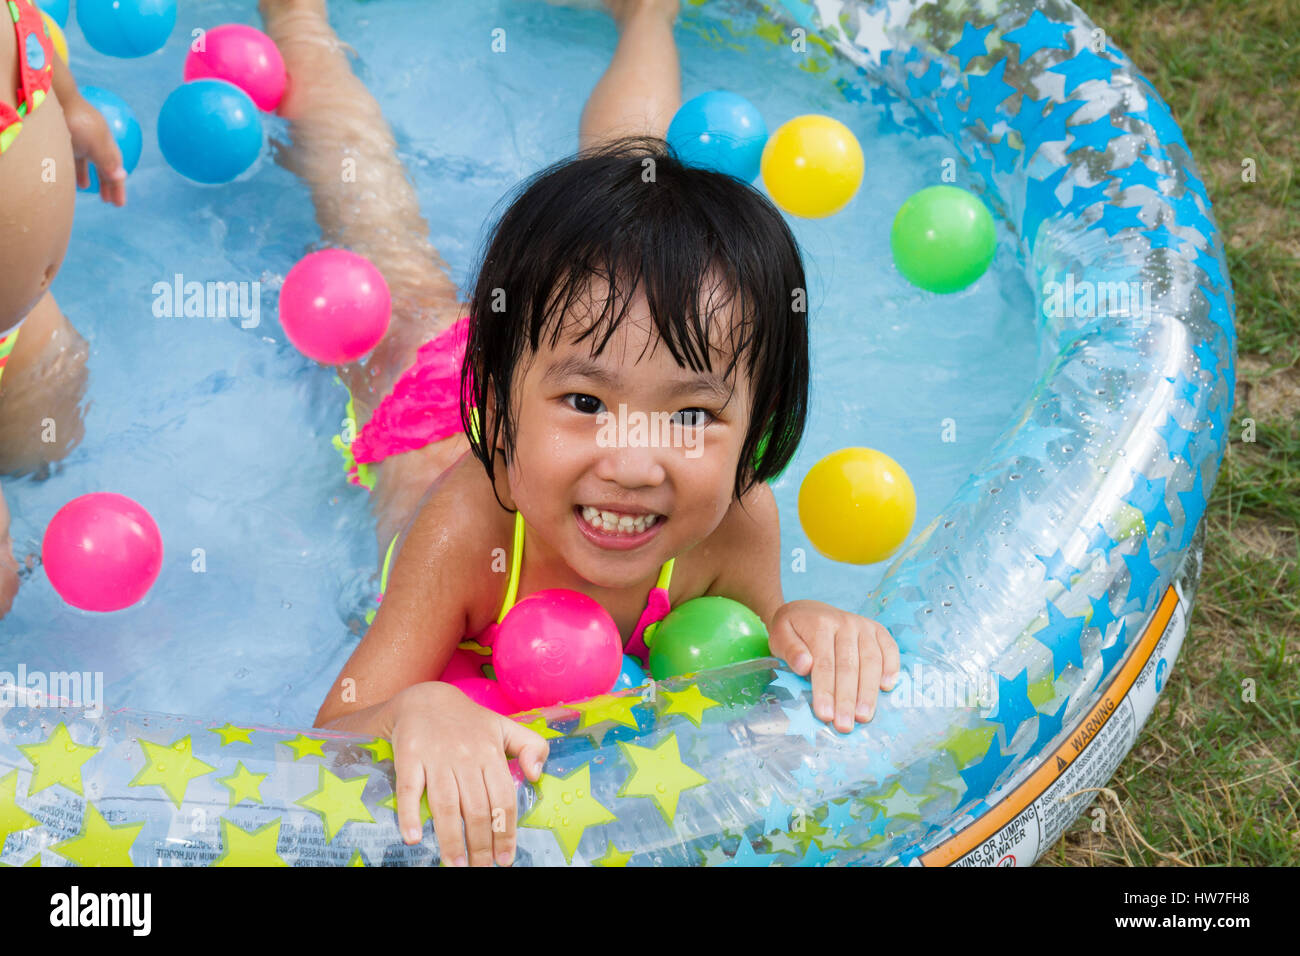 Asiatische chinesische Mädchen spielen in einen aufblasbaren Kautschuk-Swimmingpool im freien Stockfoto